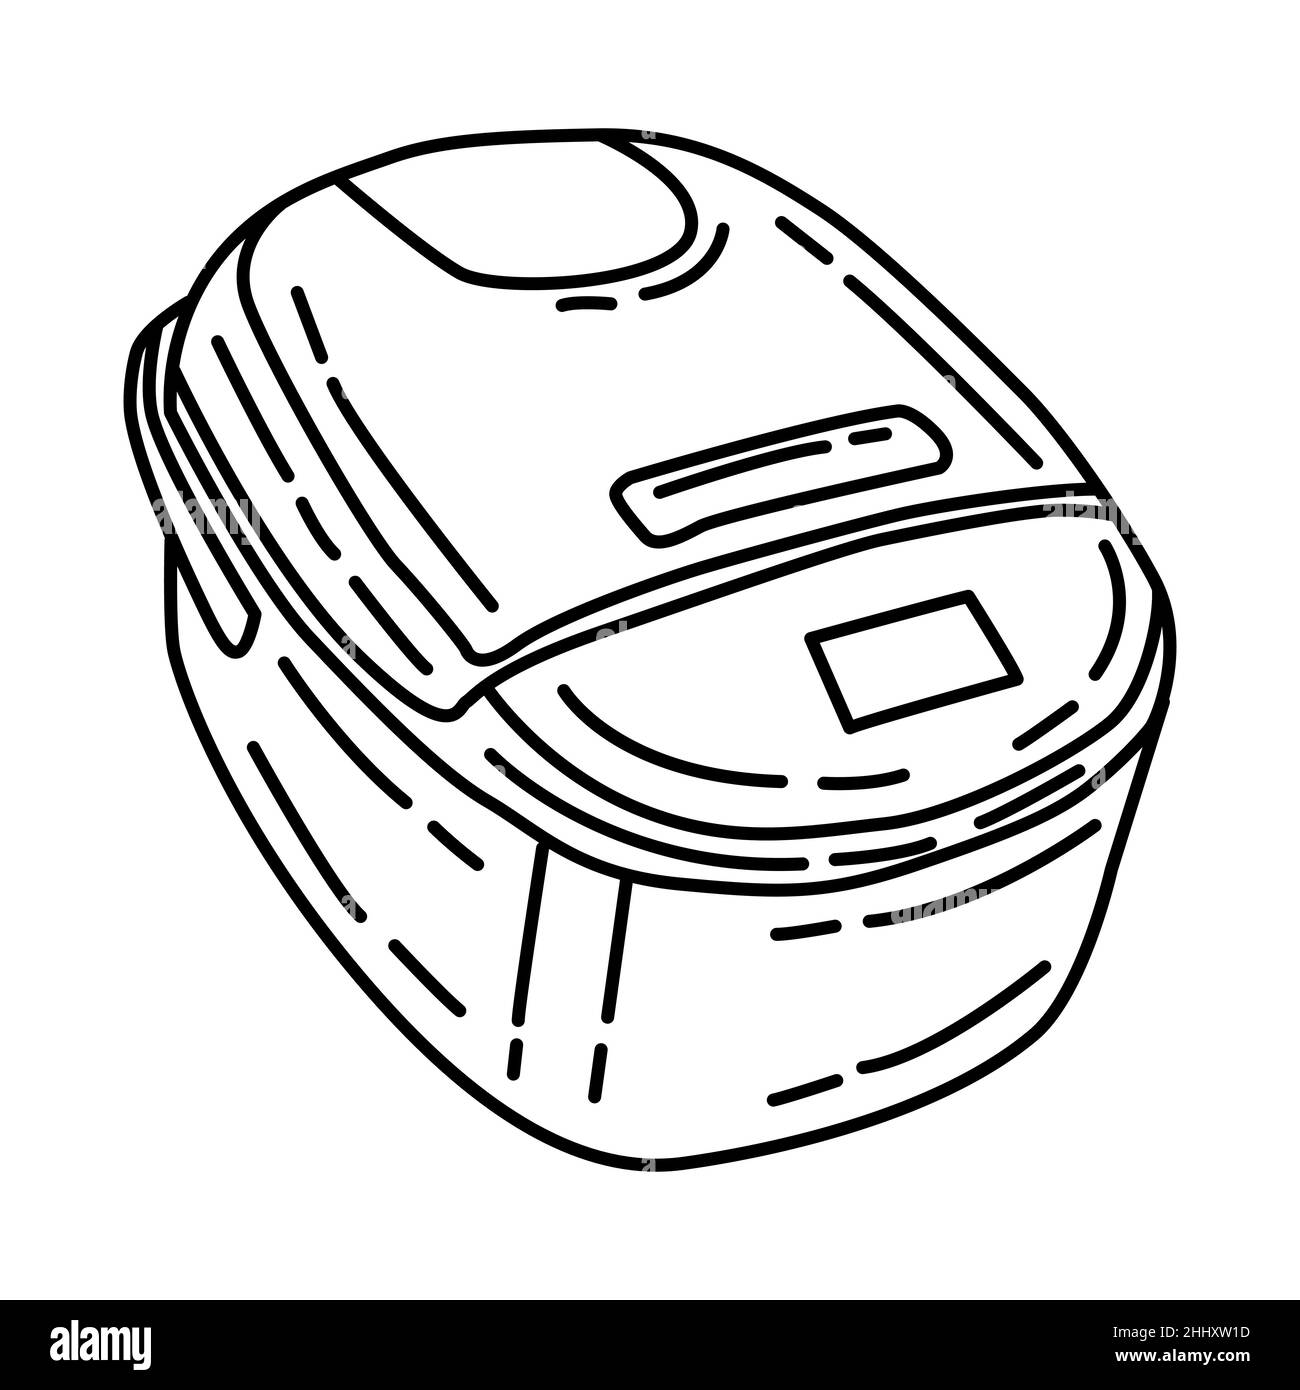 Reiskocher Teil der Elektronik für Küche und Waschanlage Handgezeichneter Symbolsatz Vektor. Stock Vektor